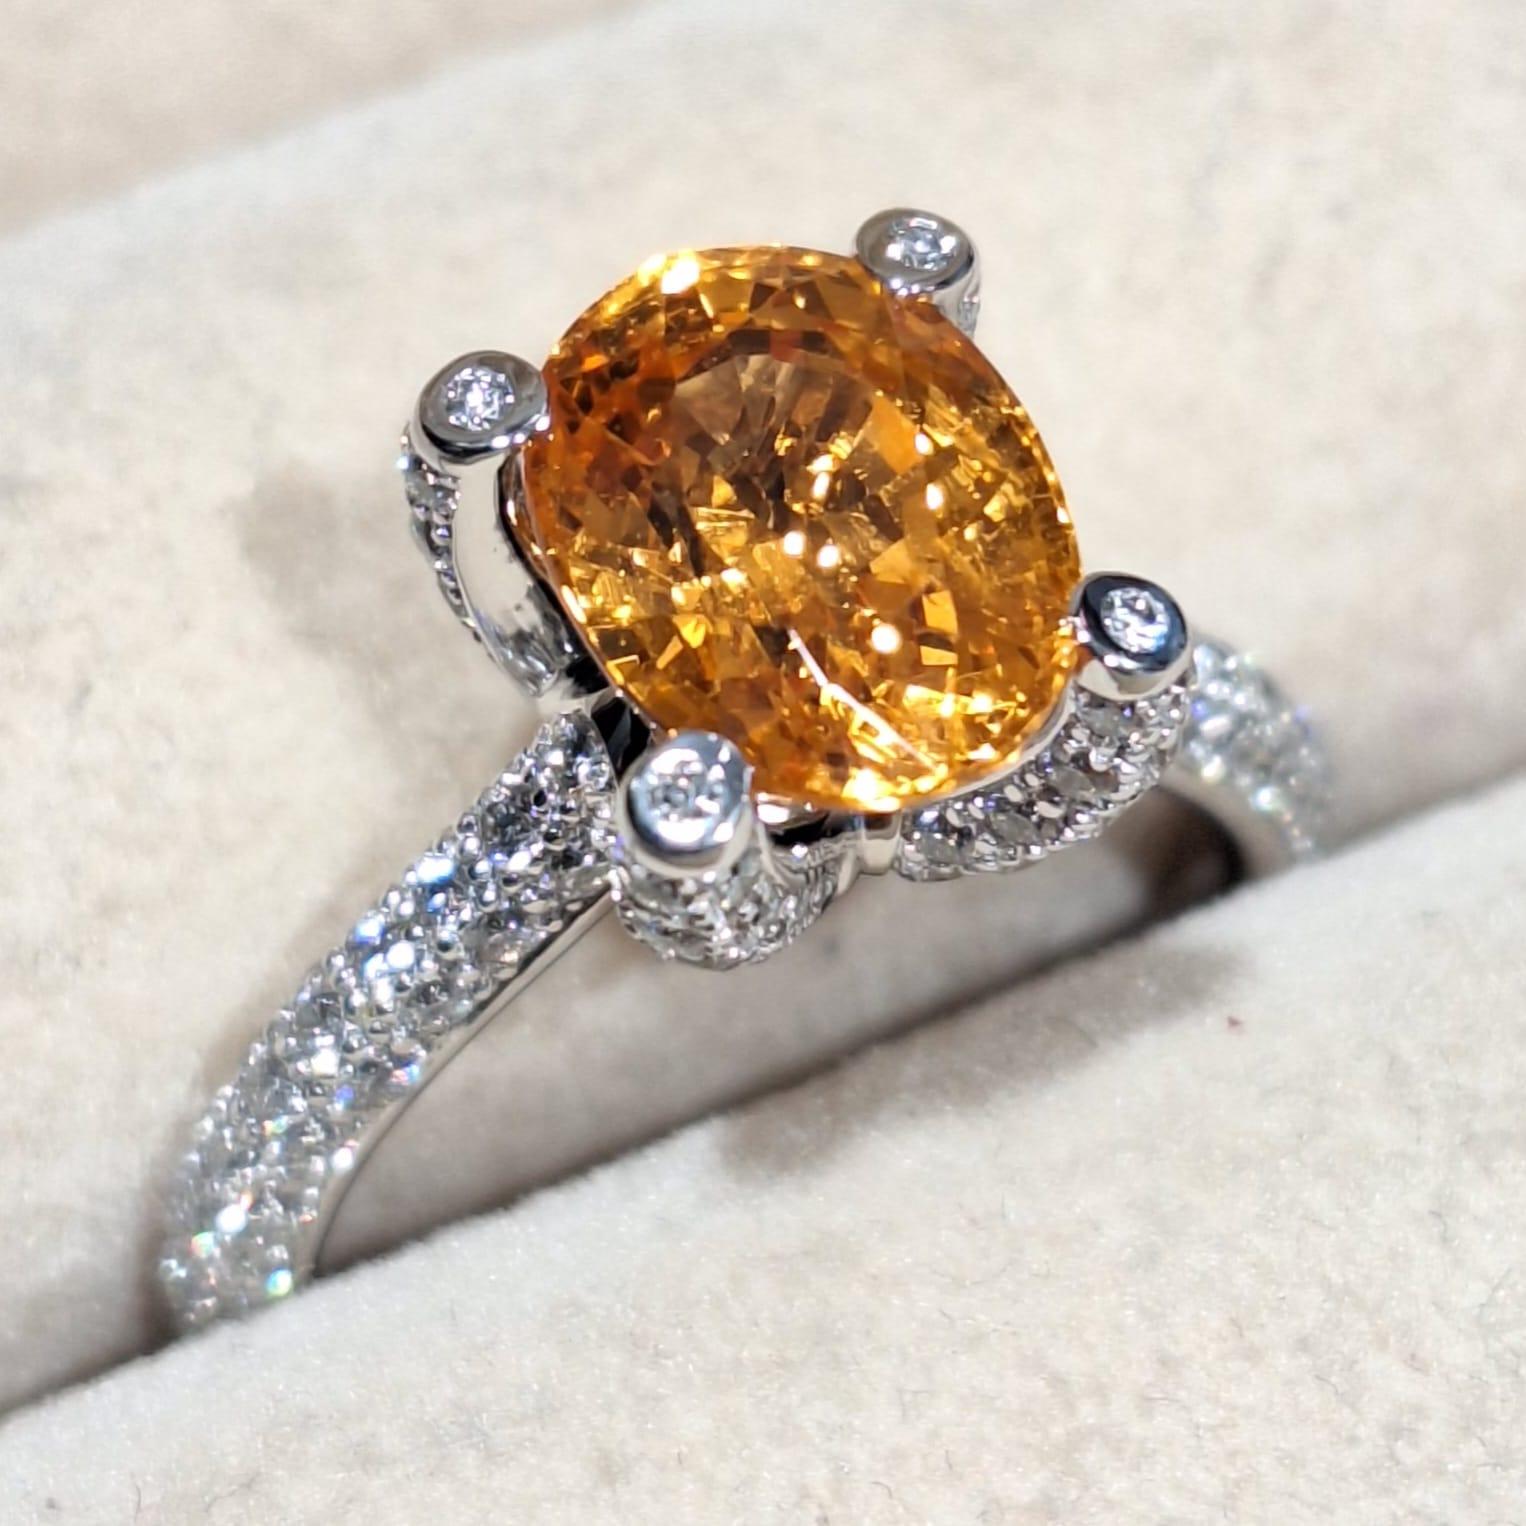 GILIN Ring aus 18 Karat Weißgold mit Granat

Der Granat ist ein Edelstein, der seit Jahrhunderten verwendet wird, um Böses abzuwehren, die Gesundheit zu fördern und die innere Stärke des Trägers zu stärken.

Die Ringfassung mit Granat in der Mitte